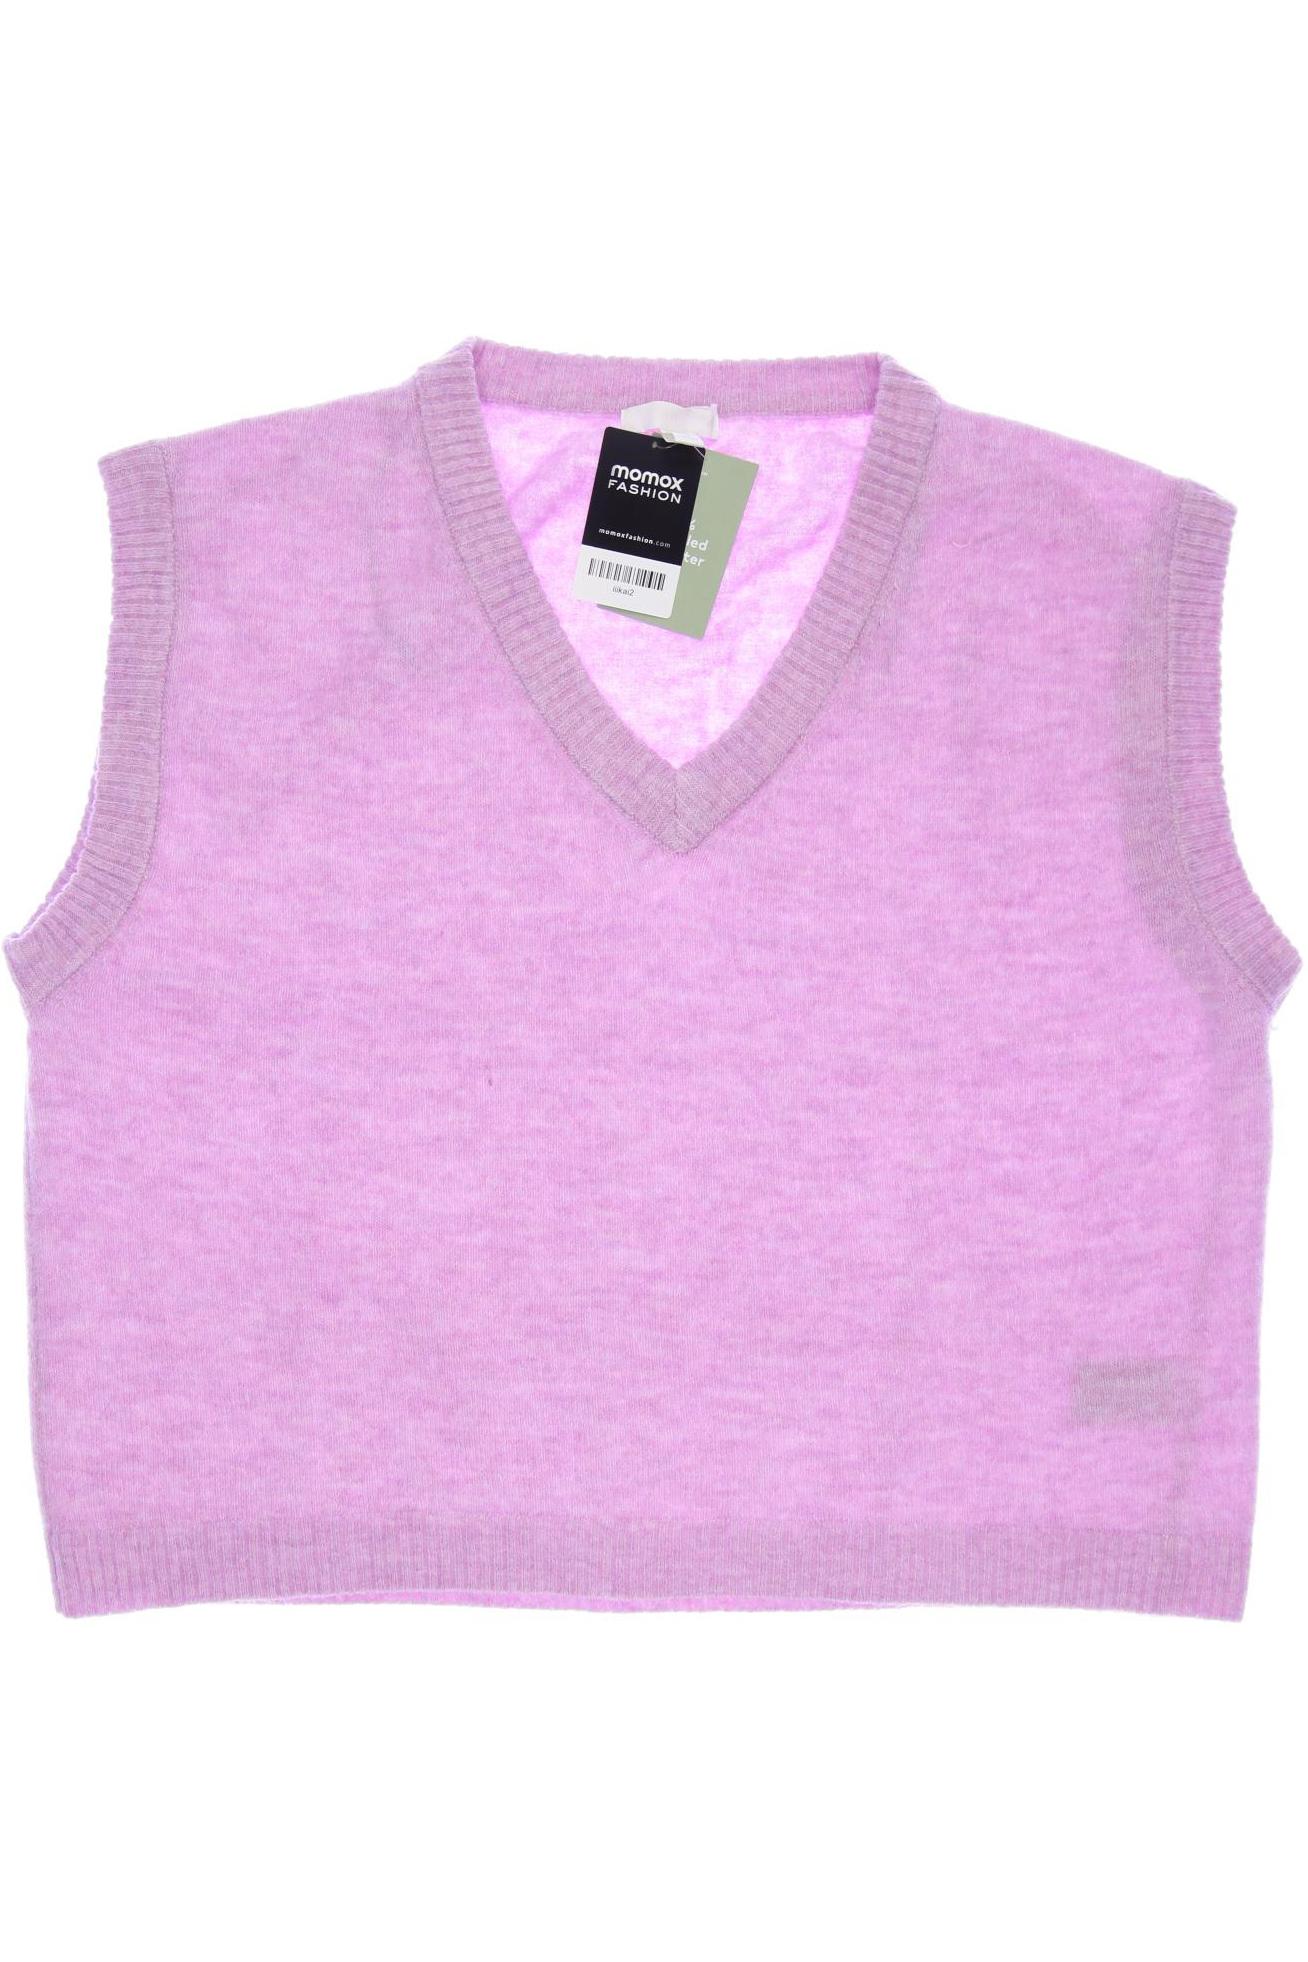 H&M Damen Pullover, pink, Gr. 38 von H&M